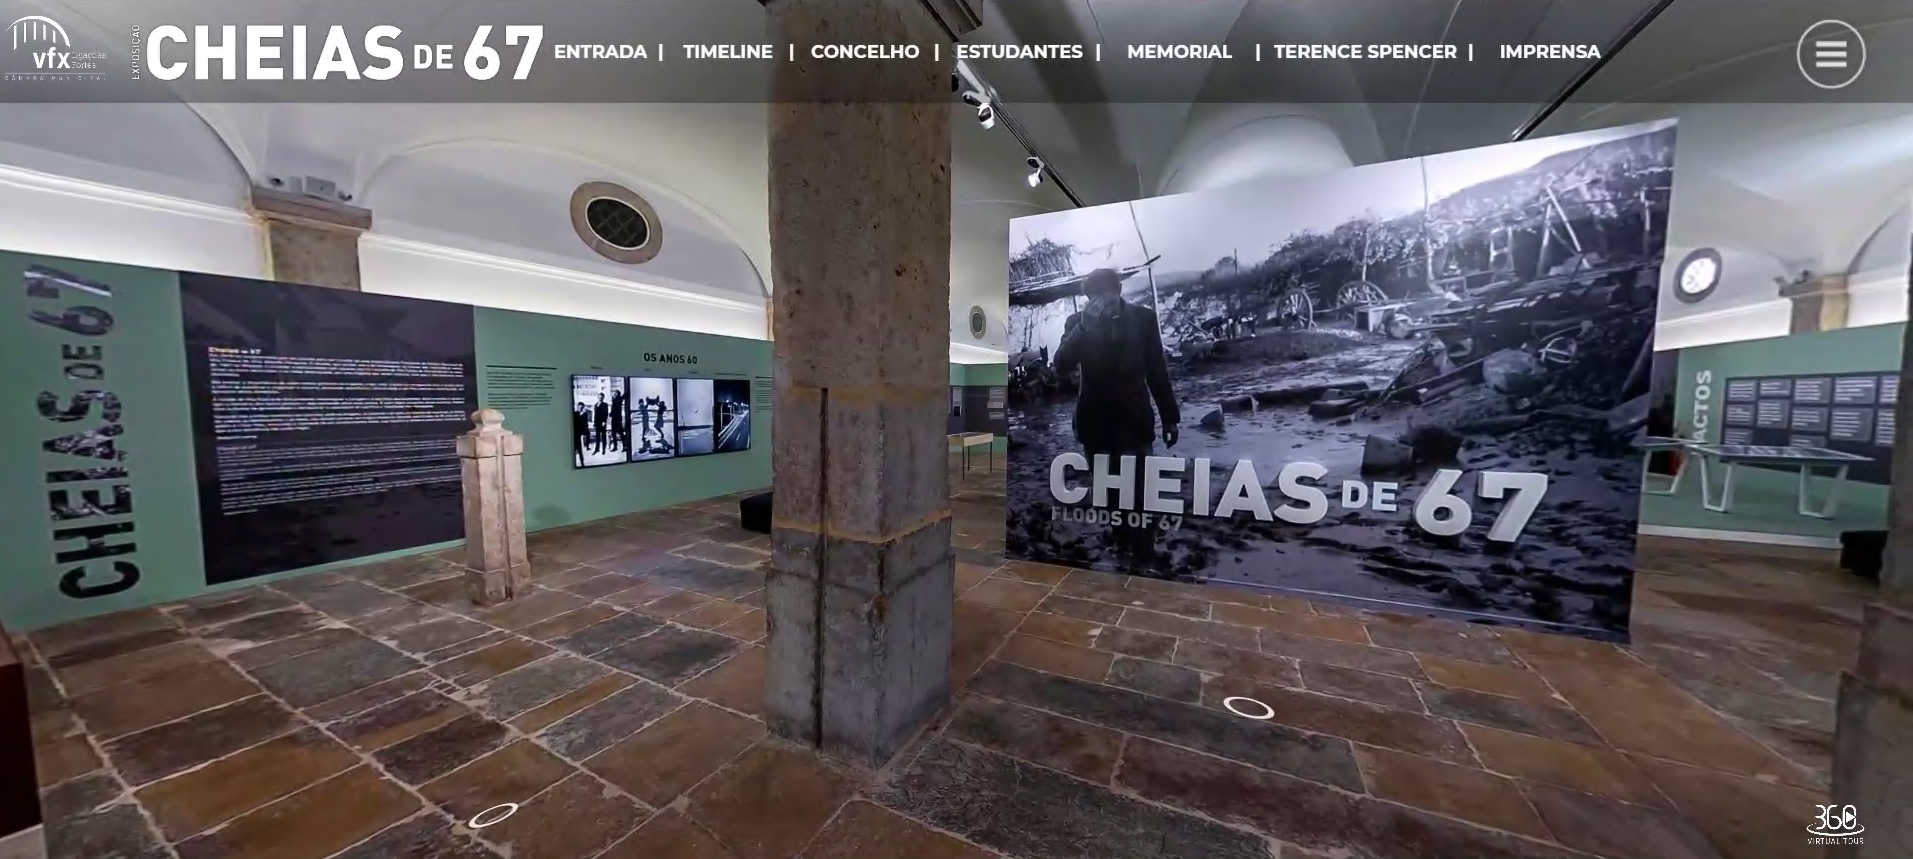 Visita Virtual à exposição "Cheias de 67"